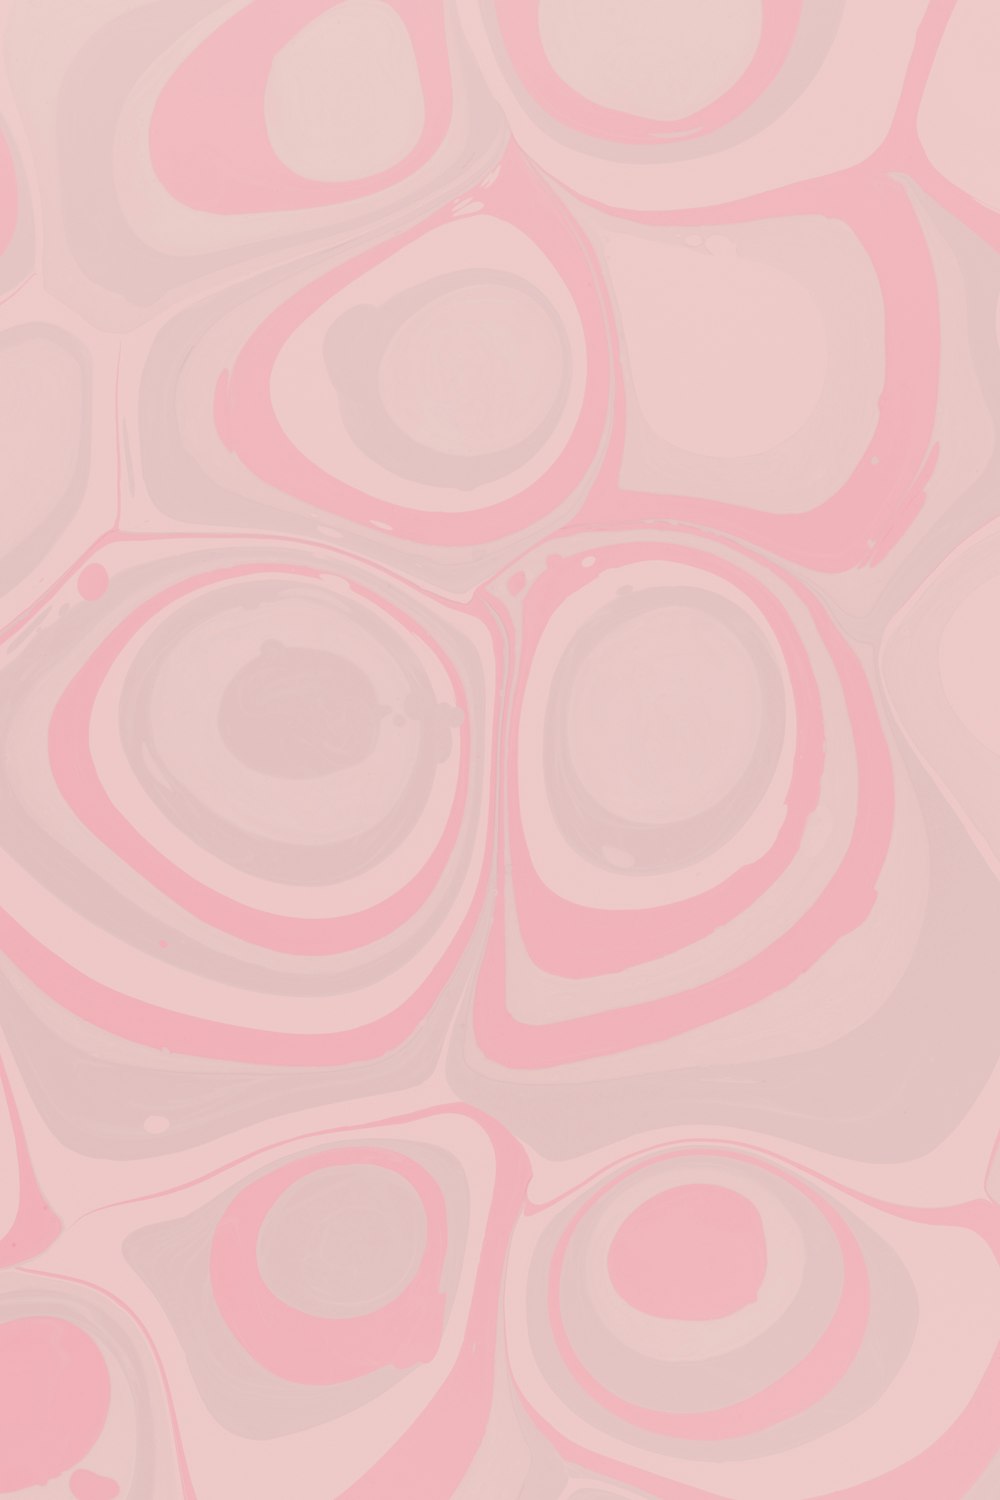 illustrazione del cuore rosa e bianco